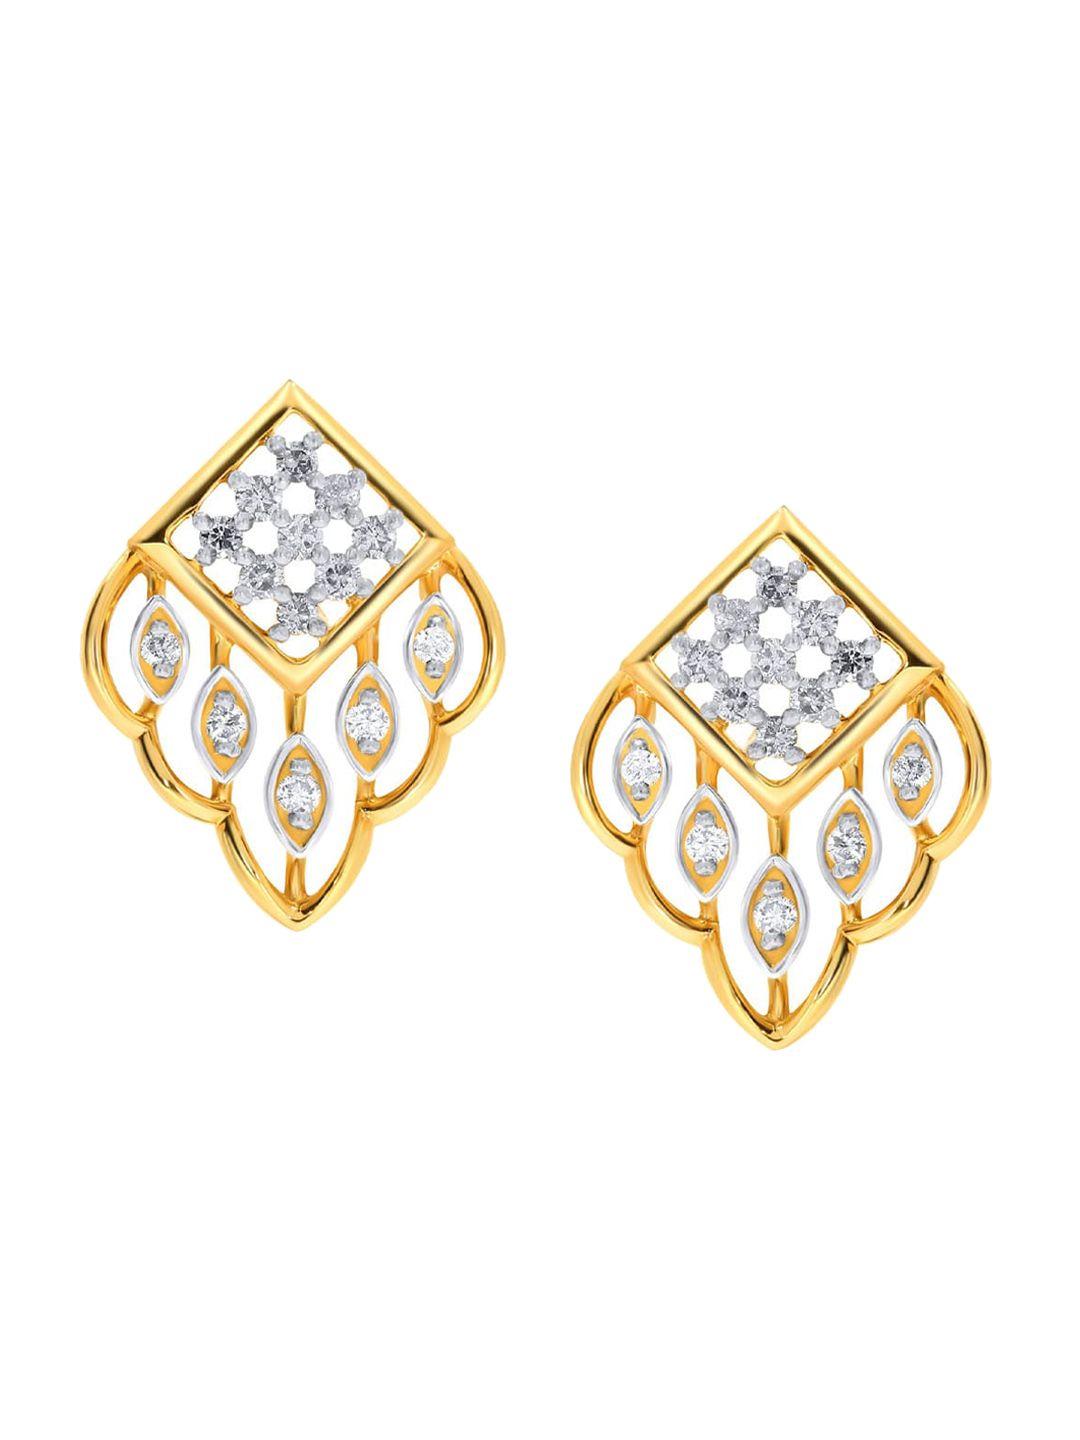 senco-14kt-sheen-diamond-studded-stud-earrings-3.7gm